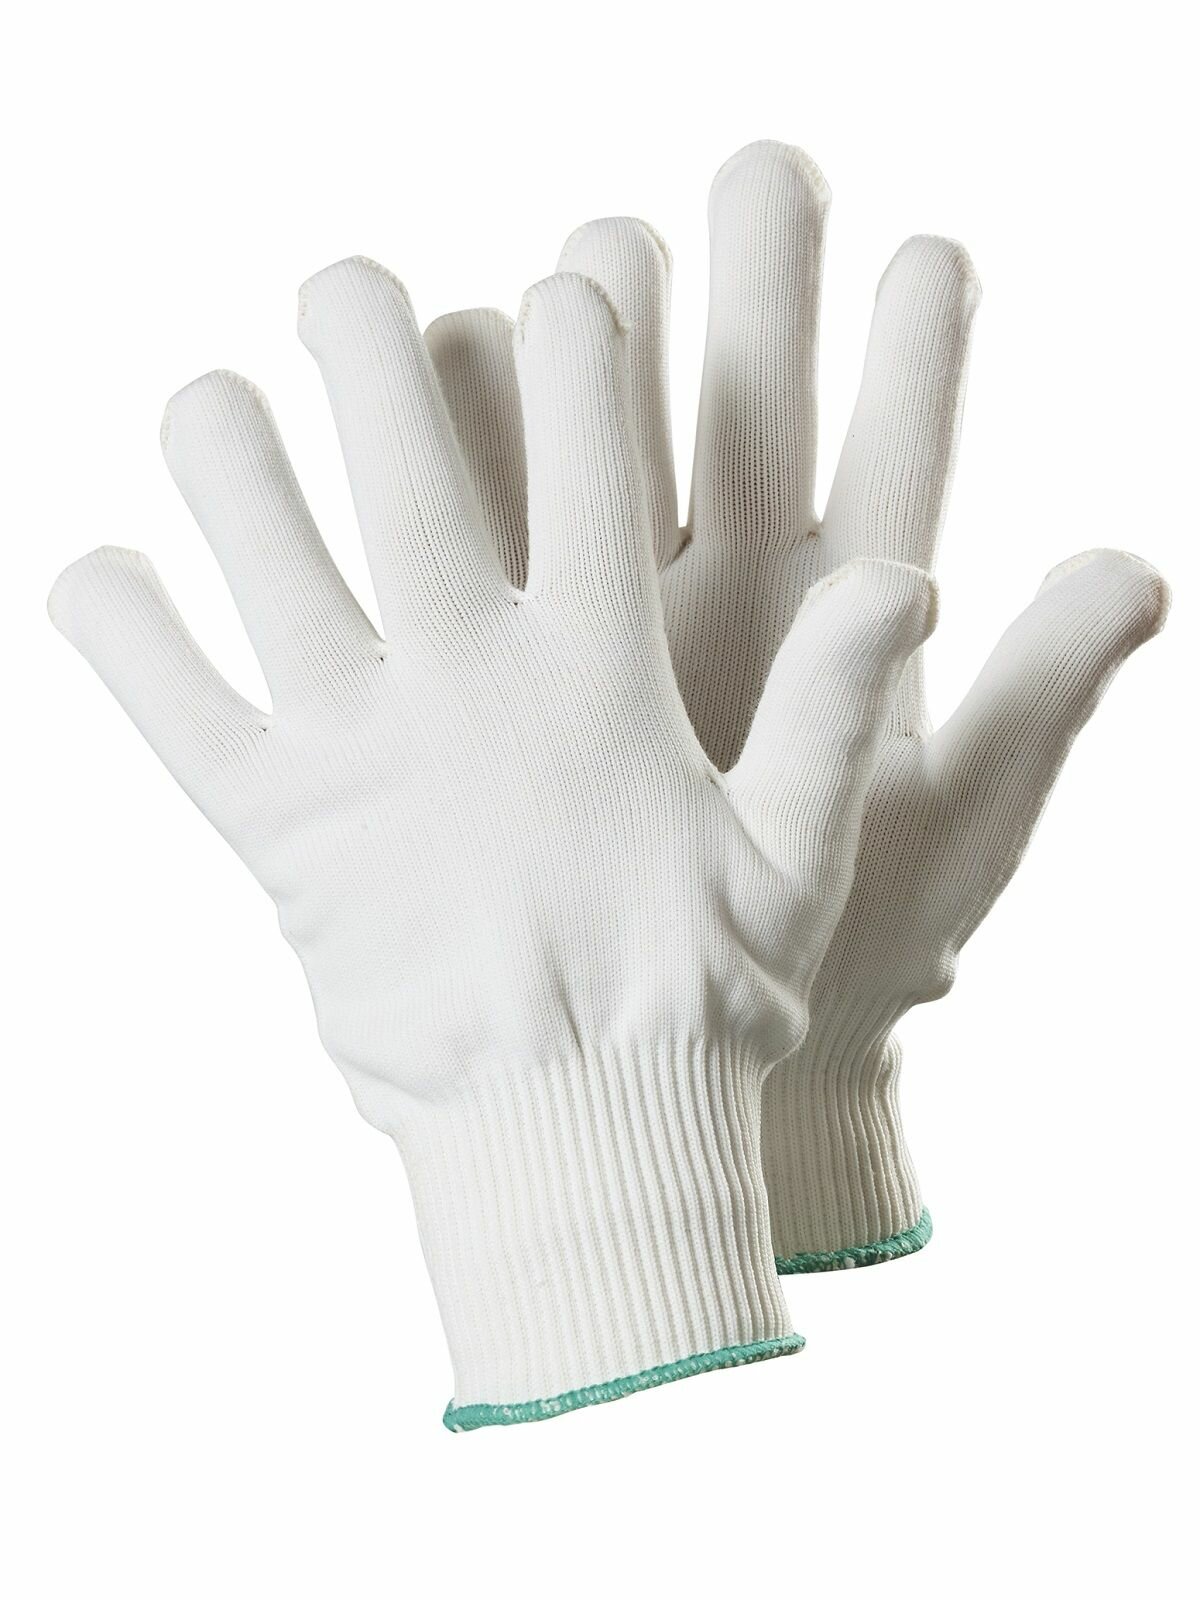 Перчатки TEGERA 310A текстильные удобные дышащие размер 9